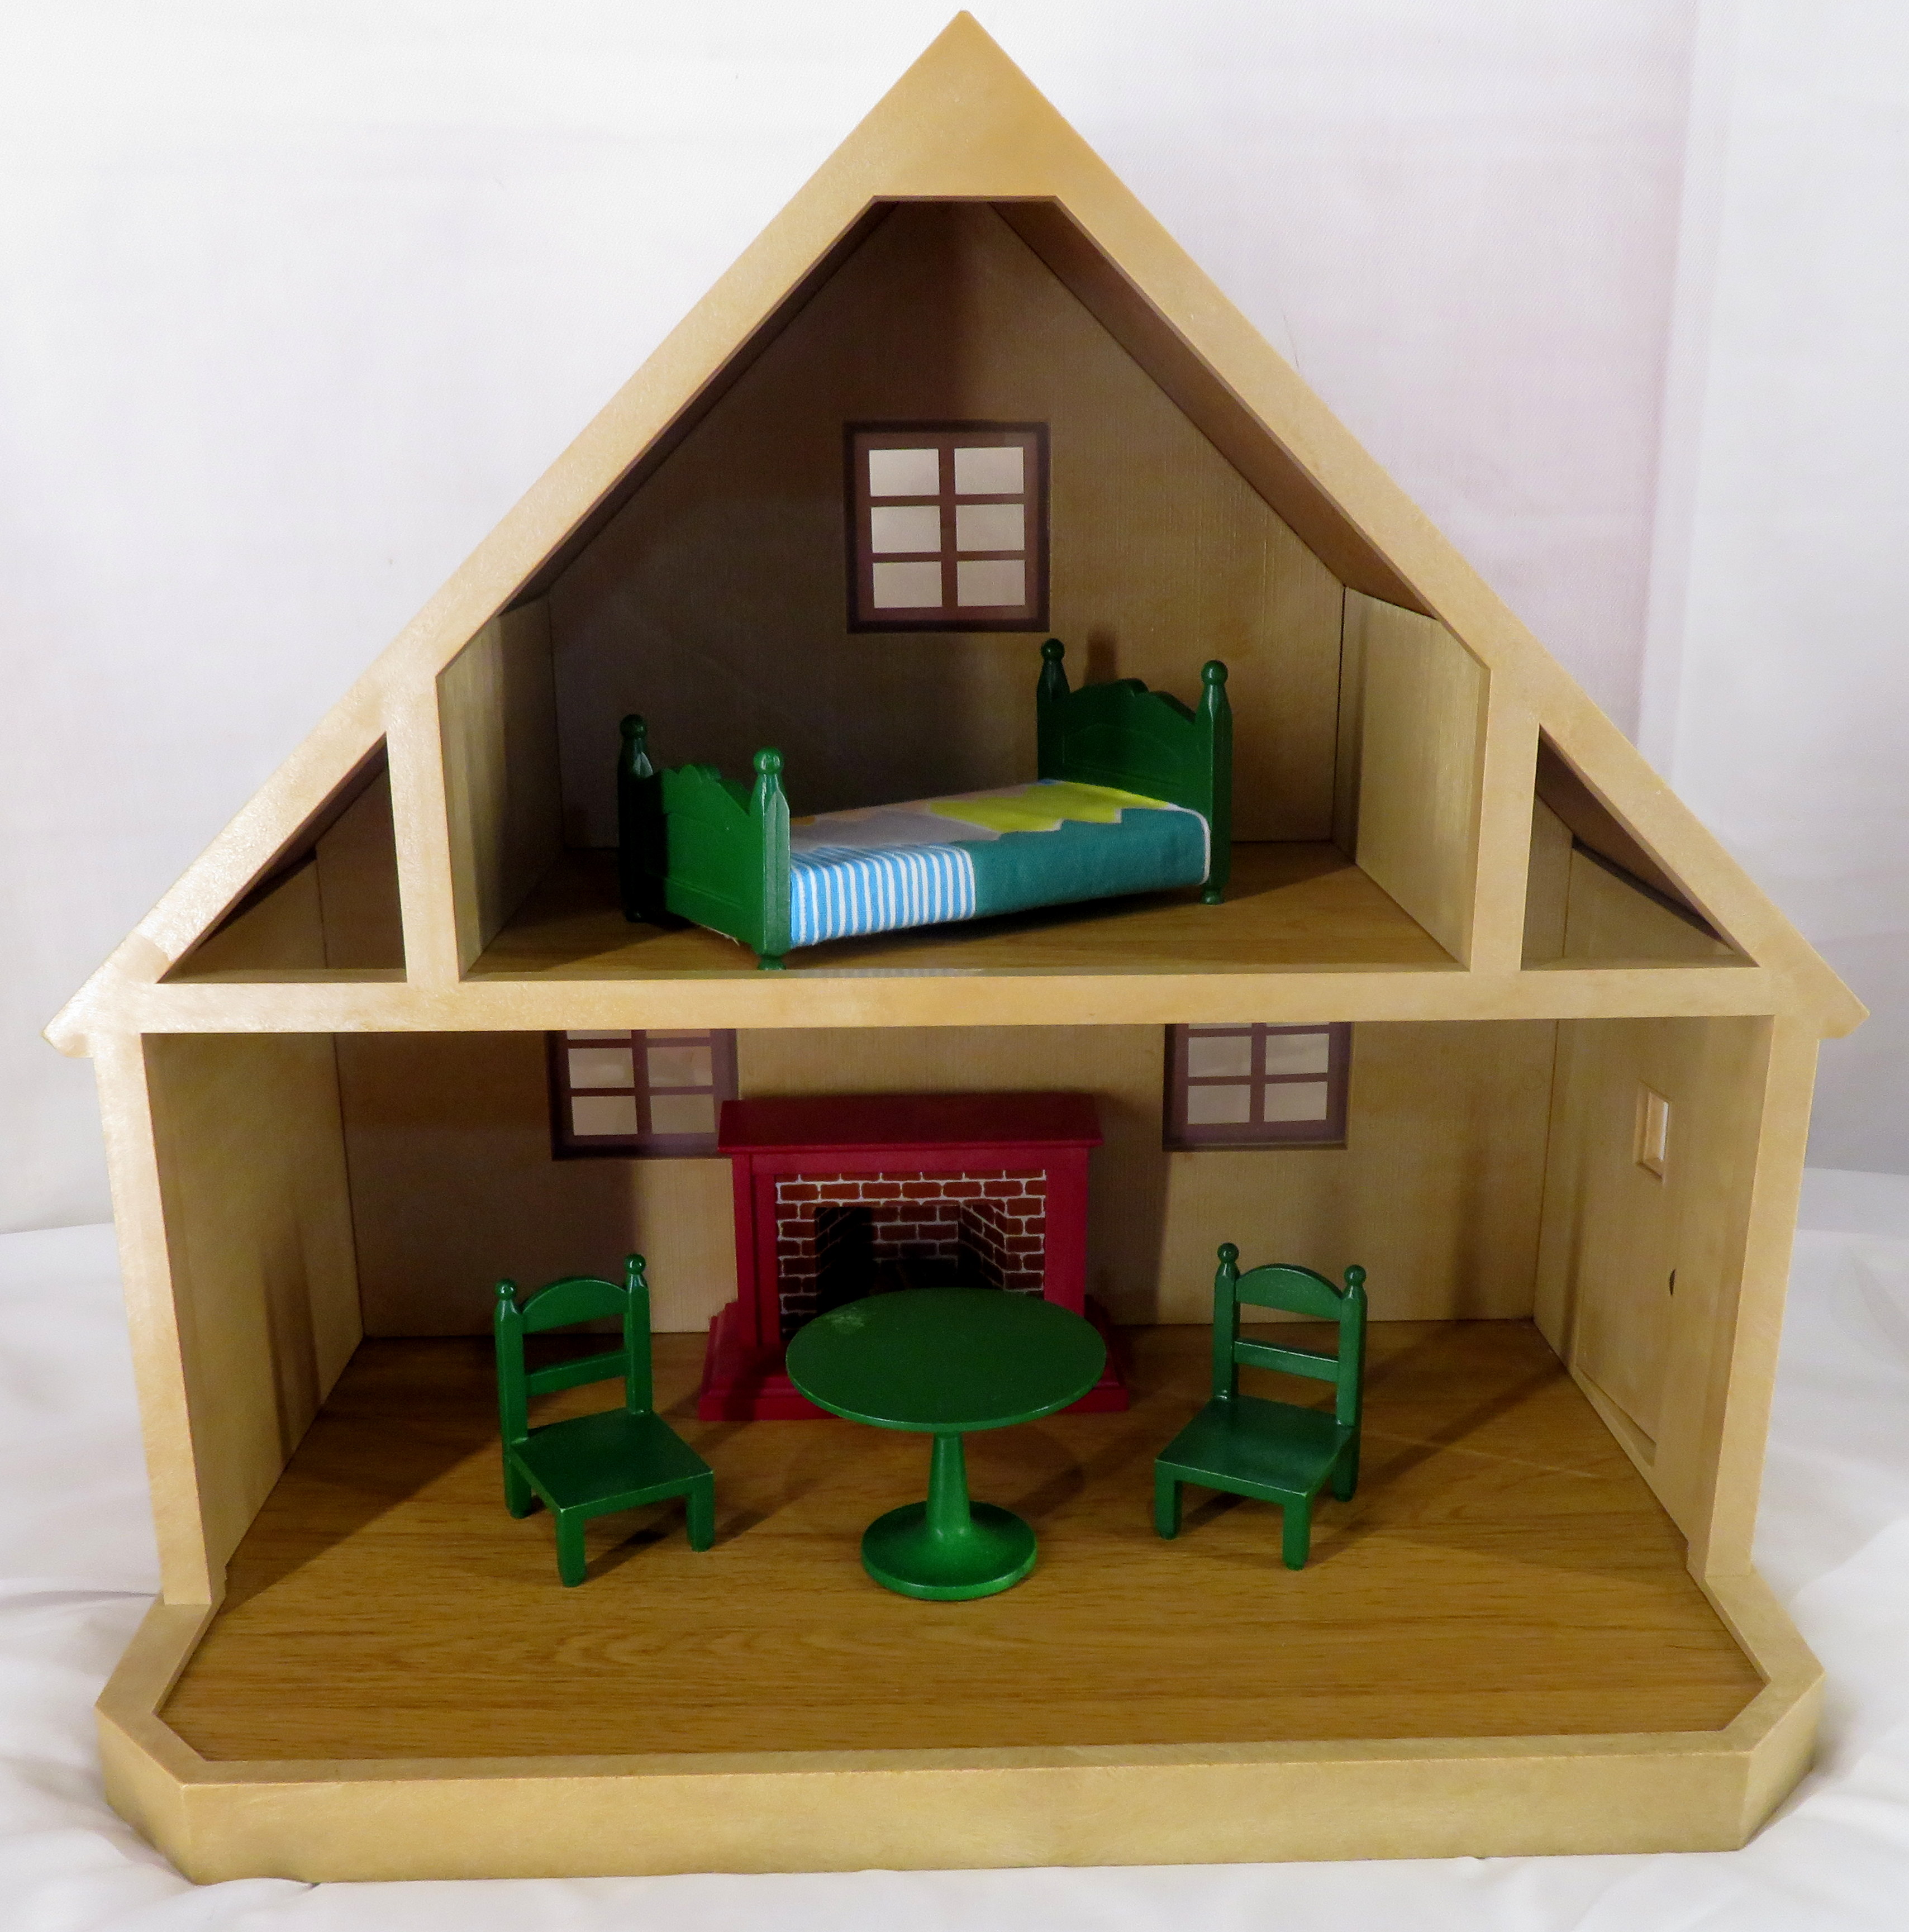 ドールハウス シルバニアファミリーサイズ 赤い屋根 緑色の家具 暖炉 まんだらけ Mandarake